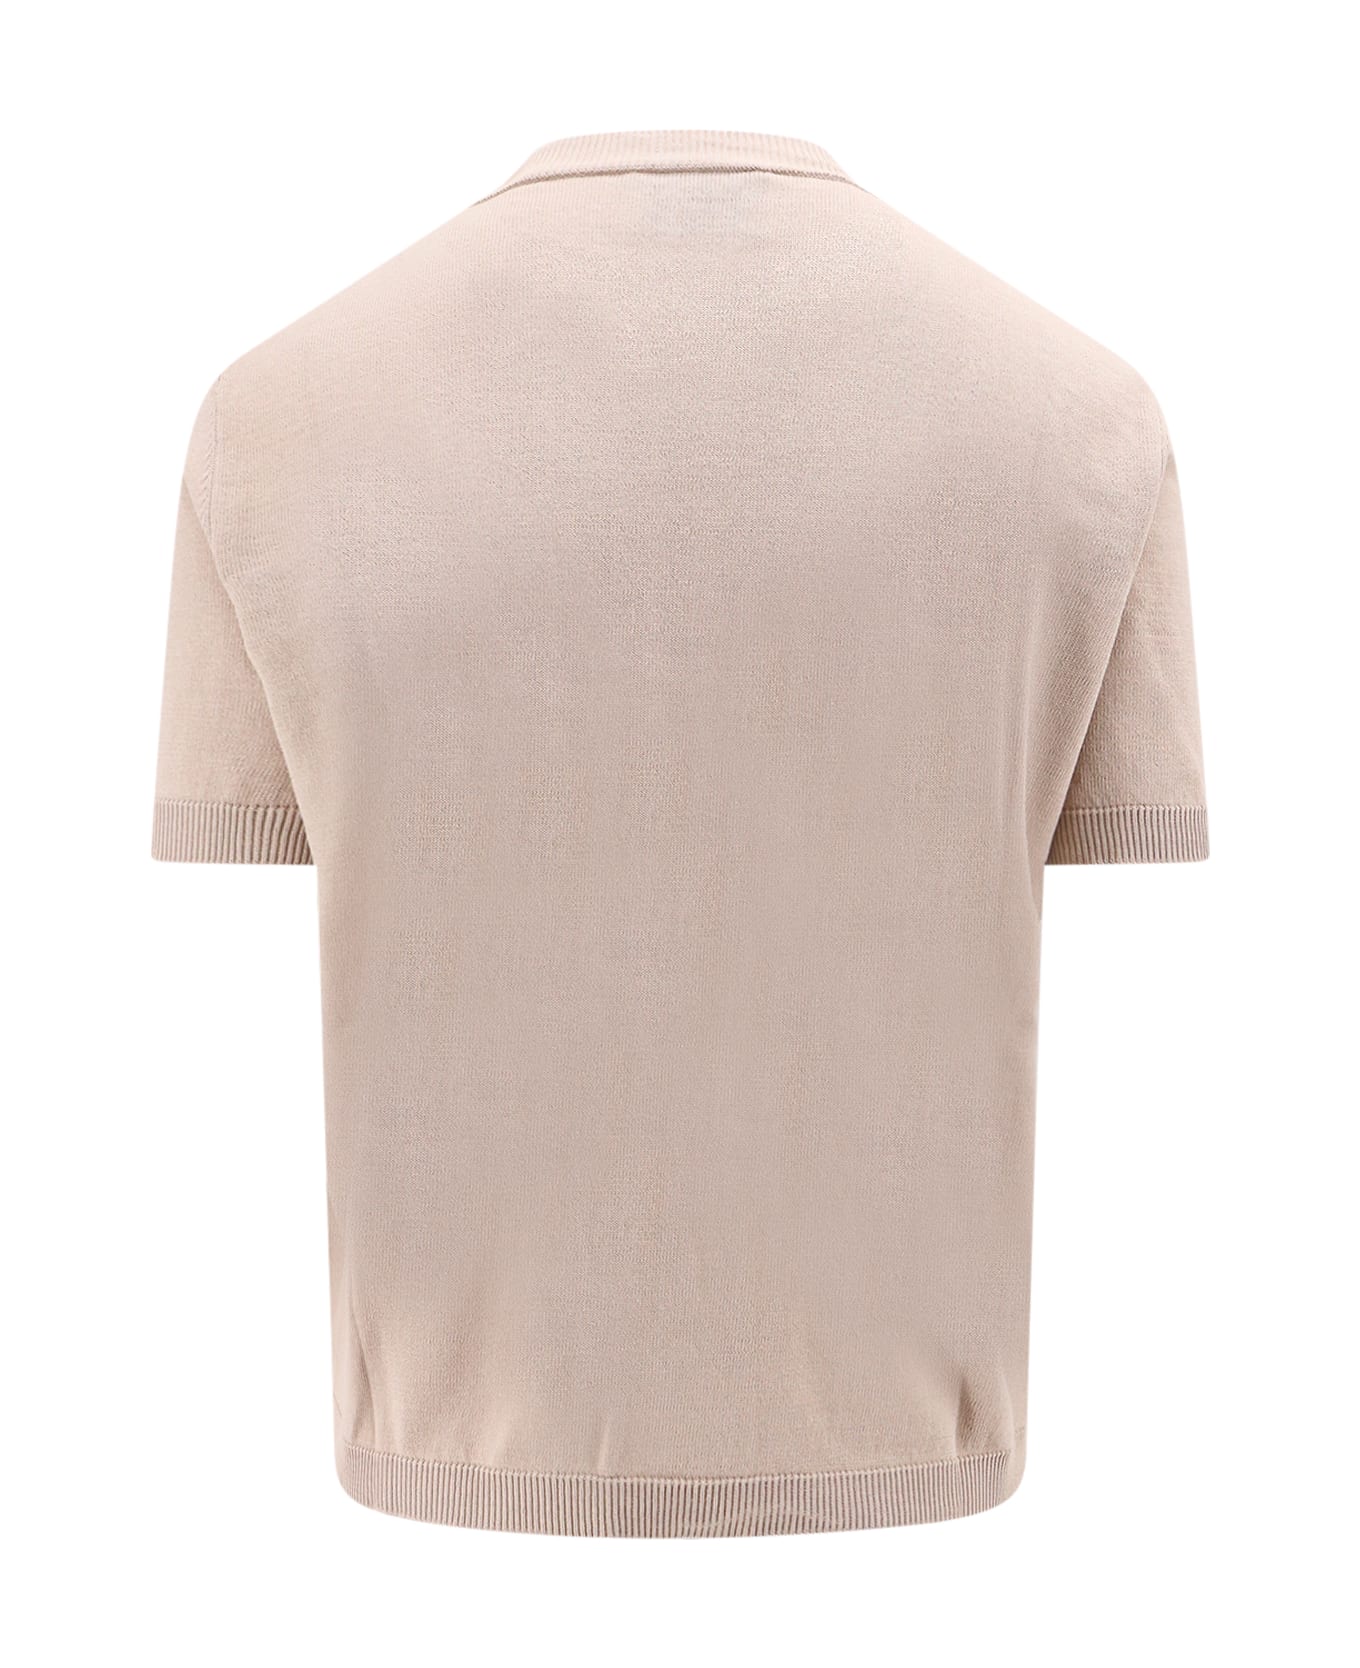 MVP Wardrobe Sweater - Beige Tシャツ